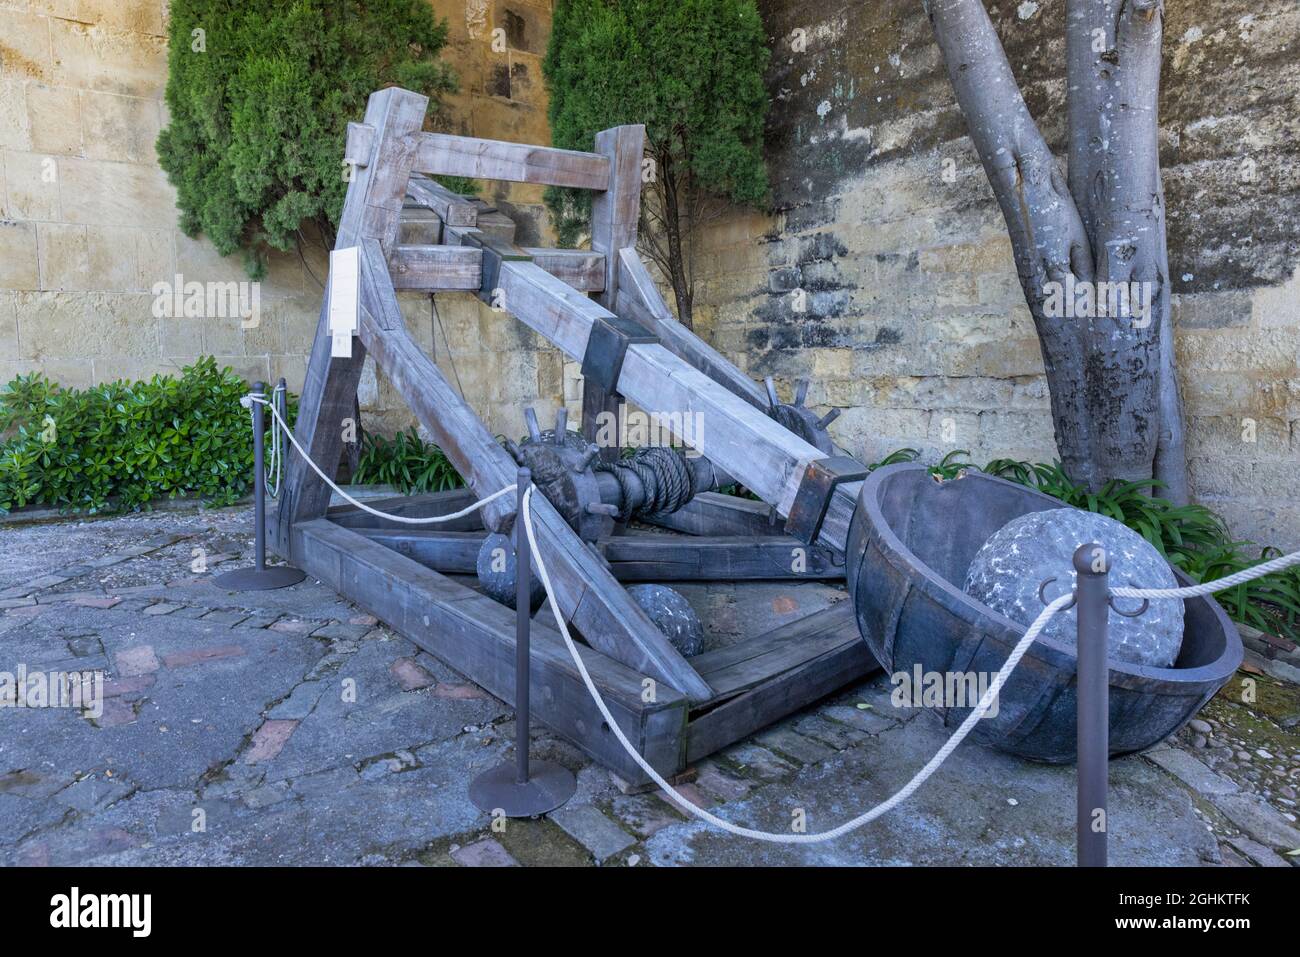 Ricreazione di una catapulta. Armi simili a questa furono usate dall'antichità fino al medioevo, spesso come armi di assedio contro città e castelli. Foto Stock